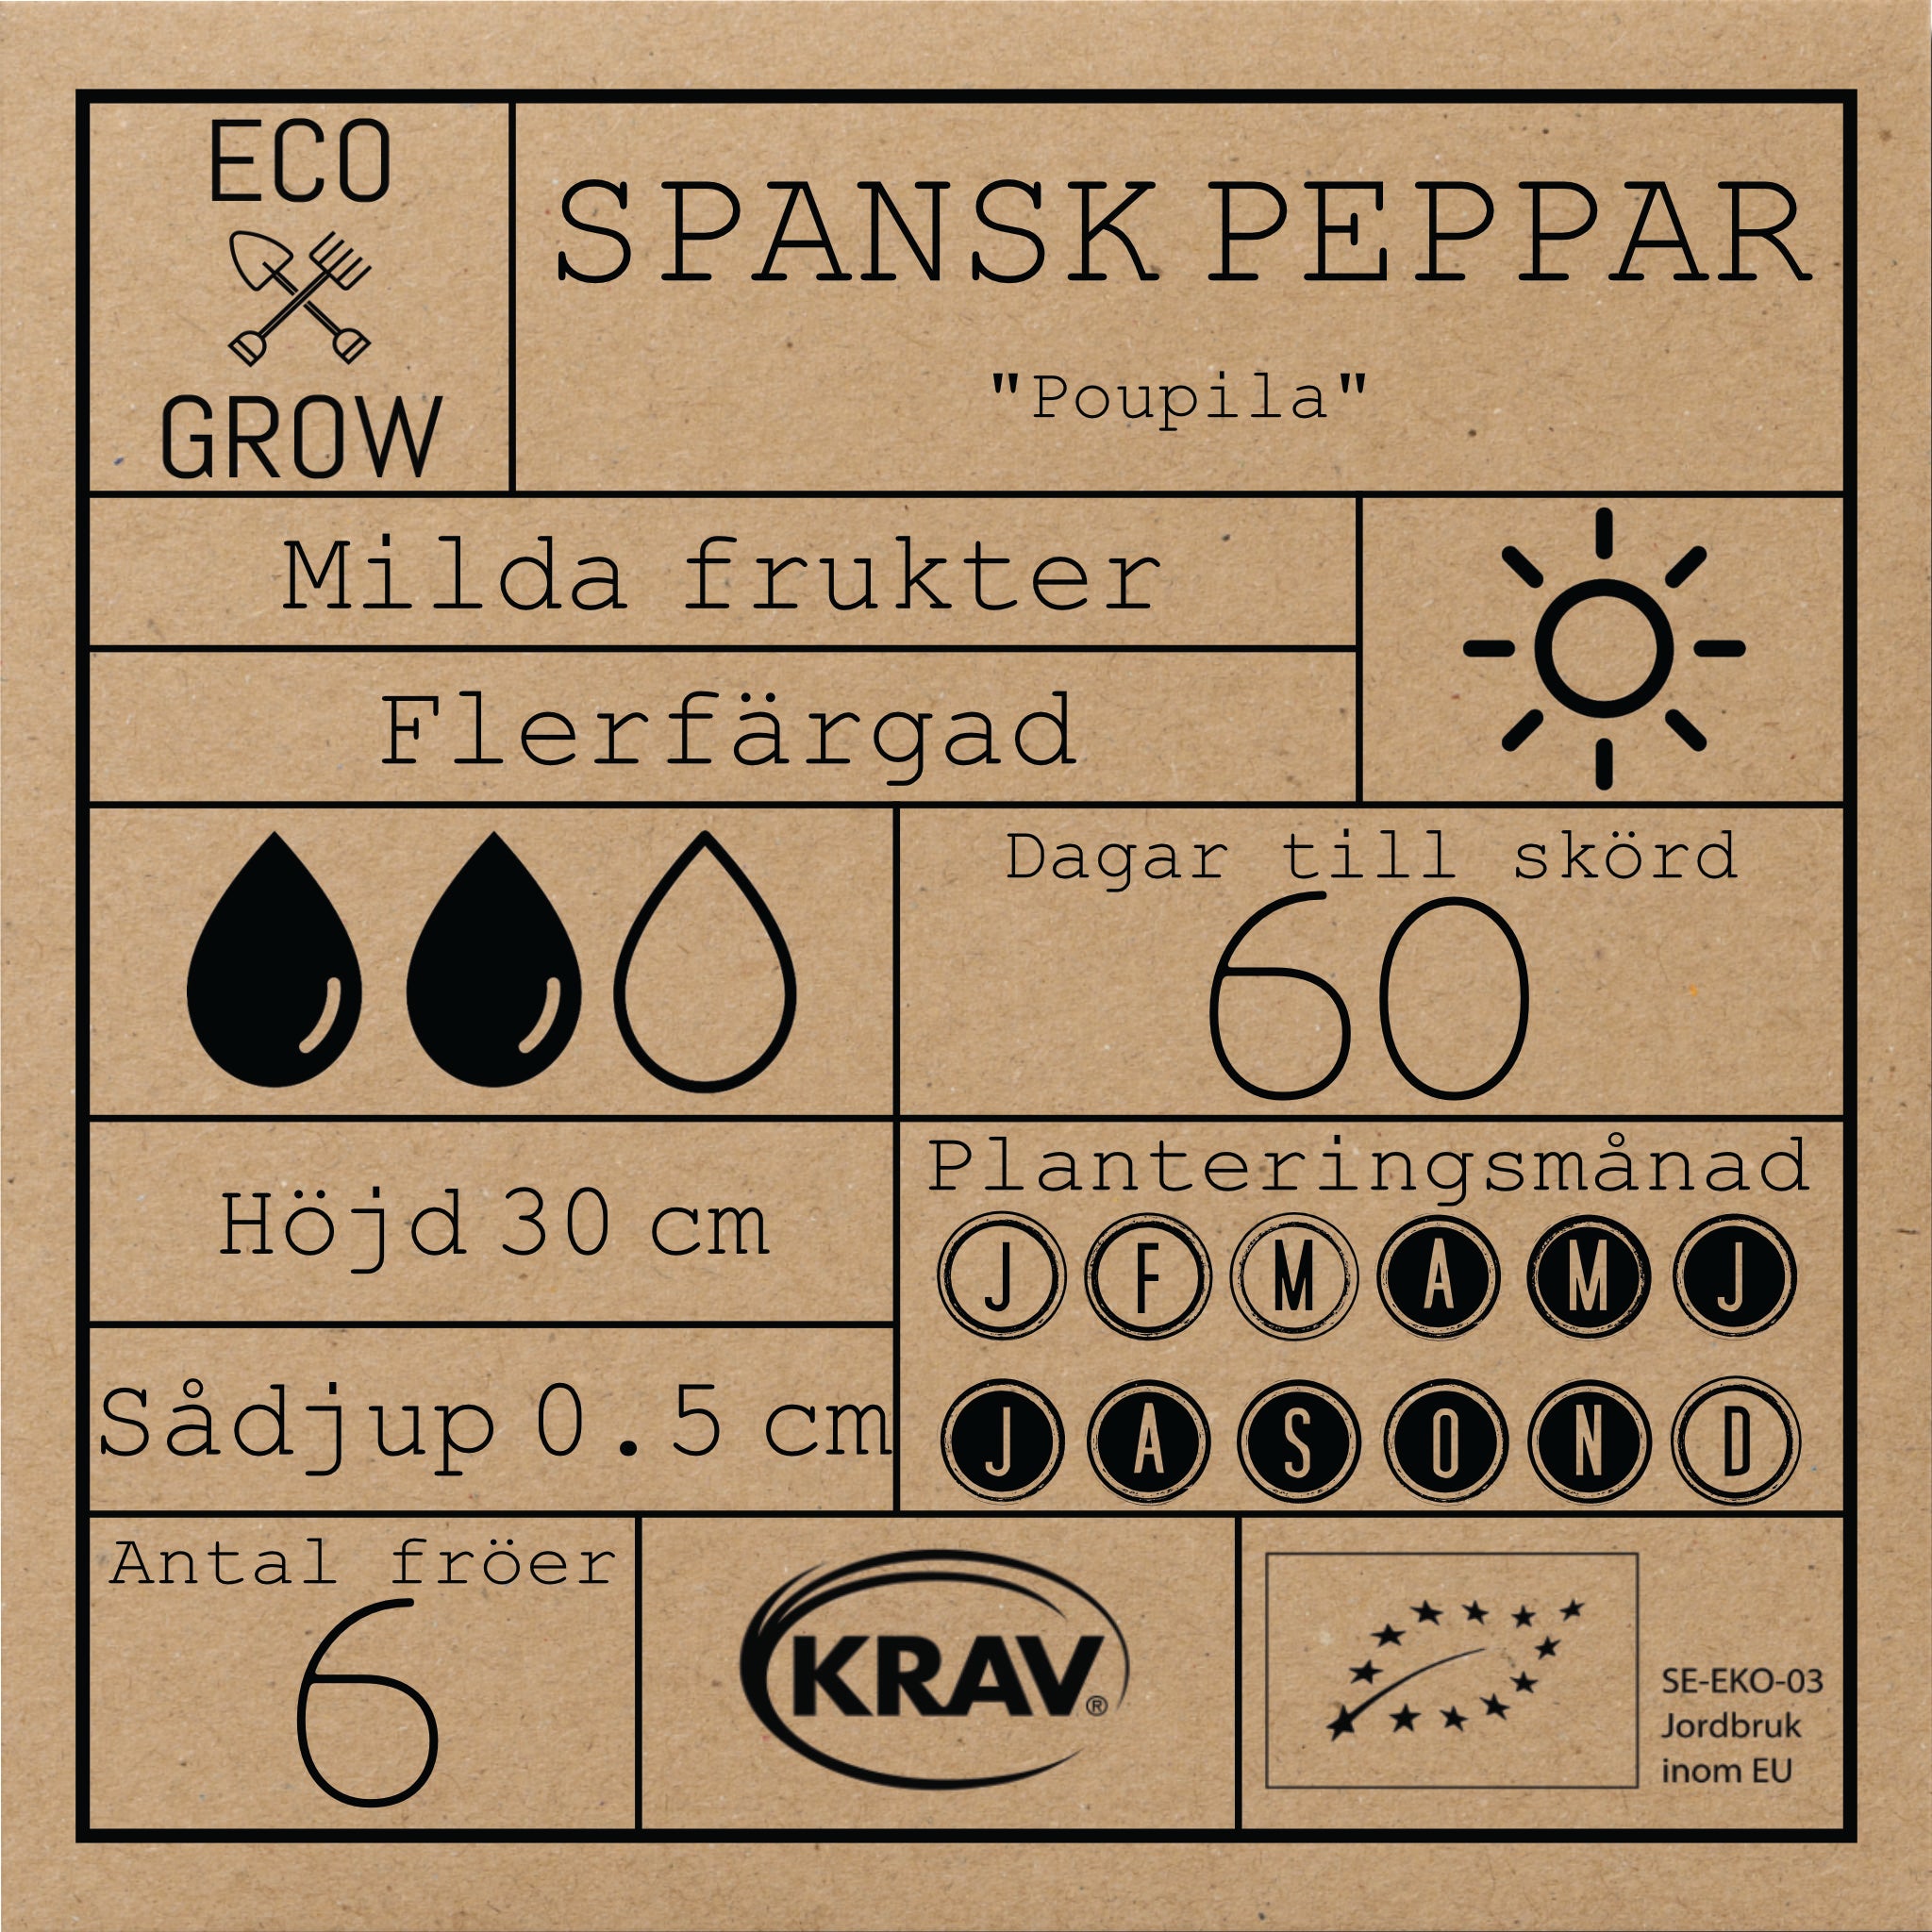 Spansk Peppar